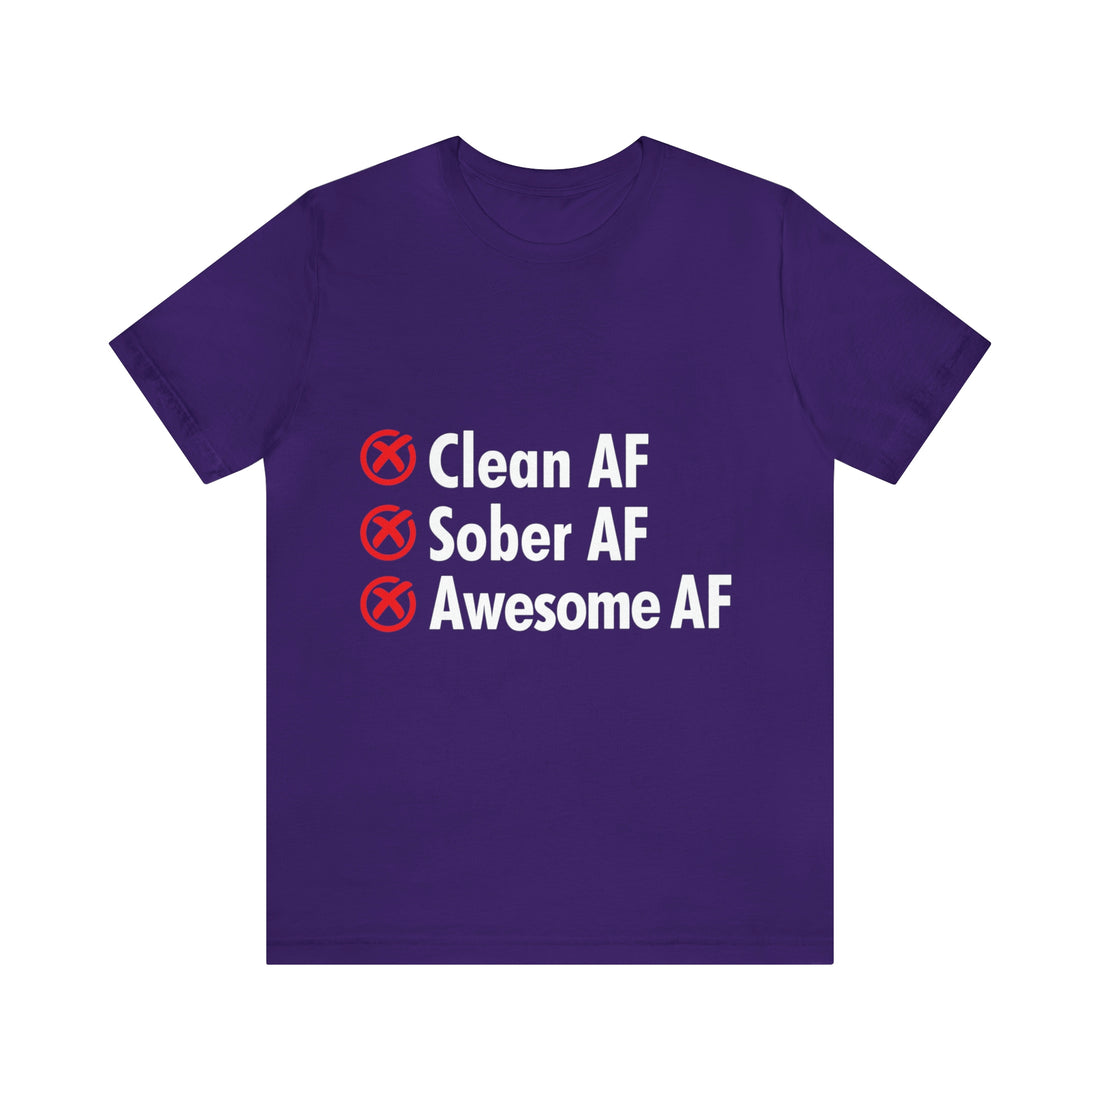 Clean AF Sober AF Awesome AF - Unisex Jersey Short Sleeve Tee